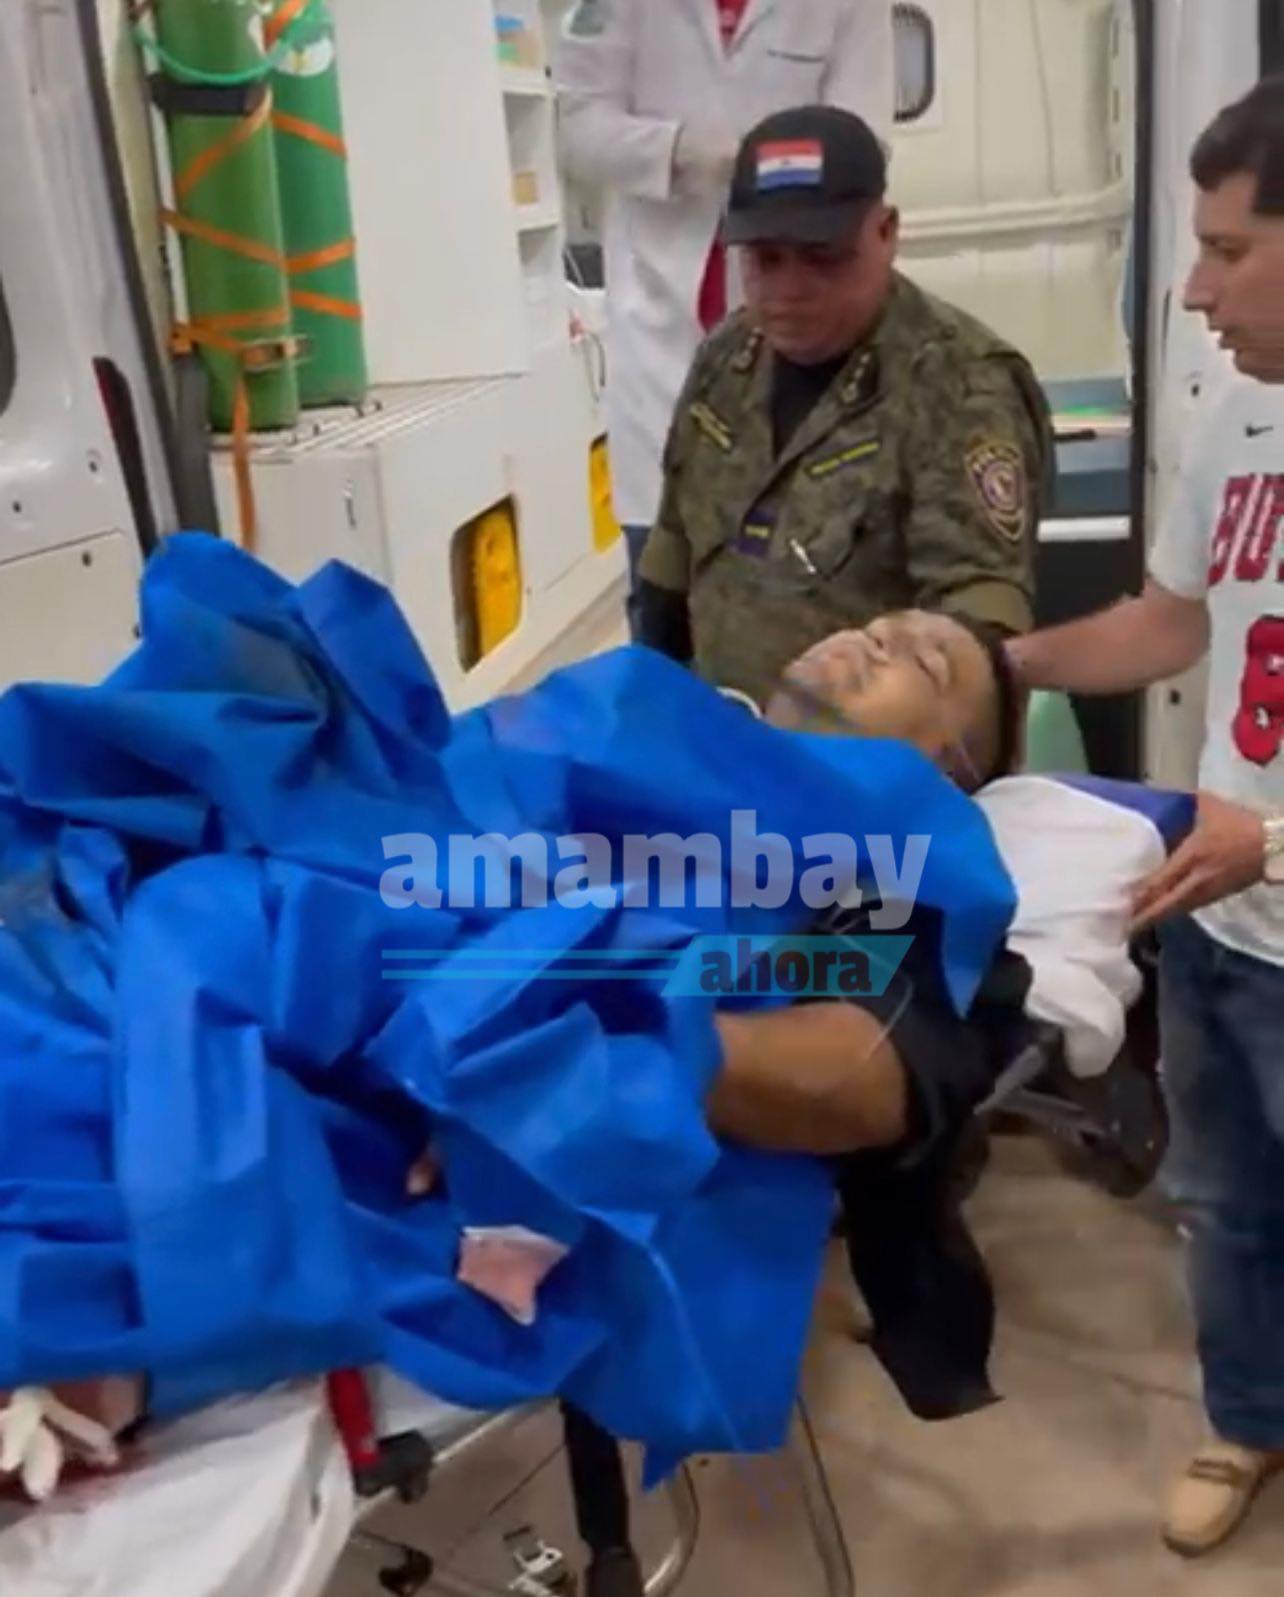 Policia herido recibió 6 disparos y fue trasladado a Asunción 